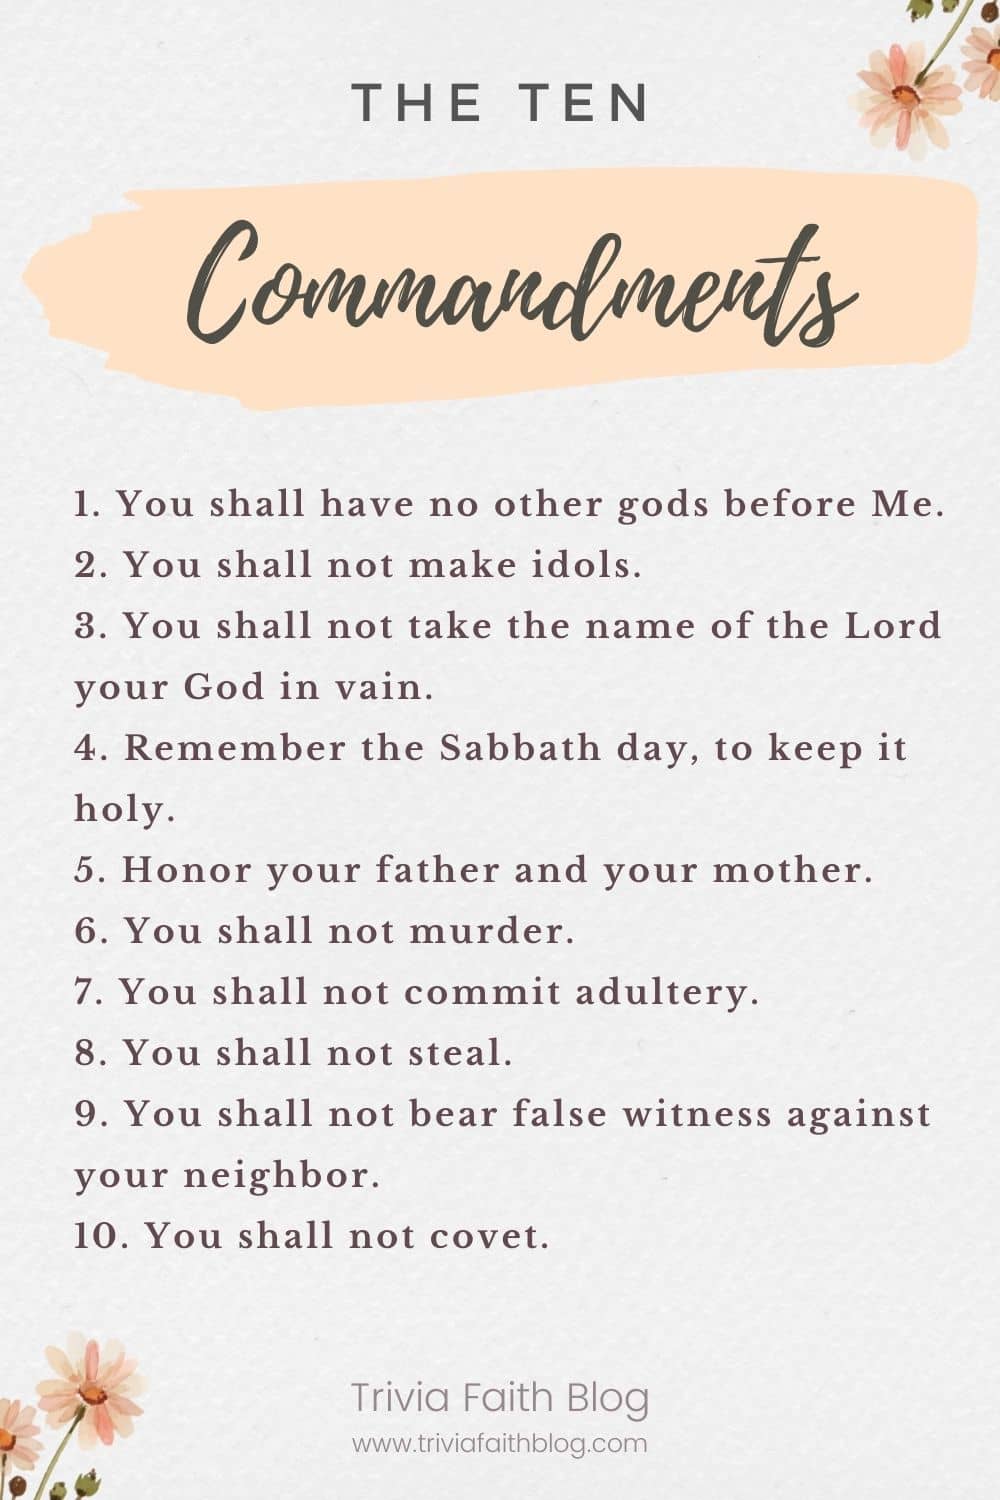 bible verses about 10 commandments
the 10 commandments